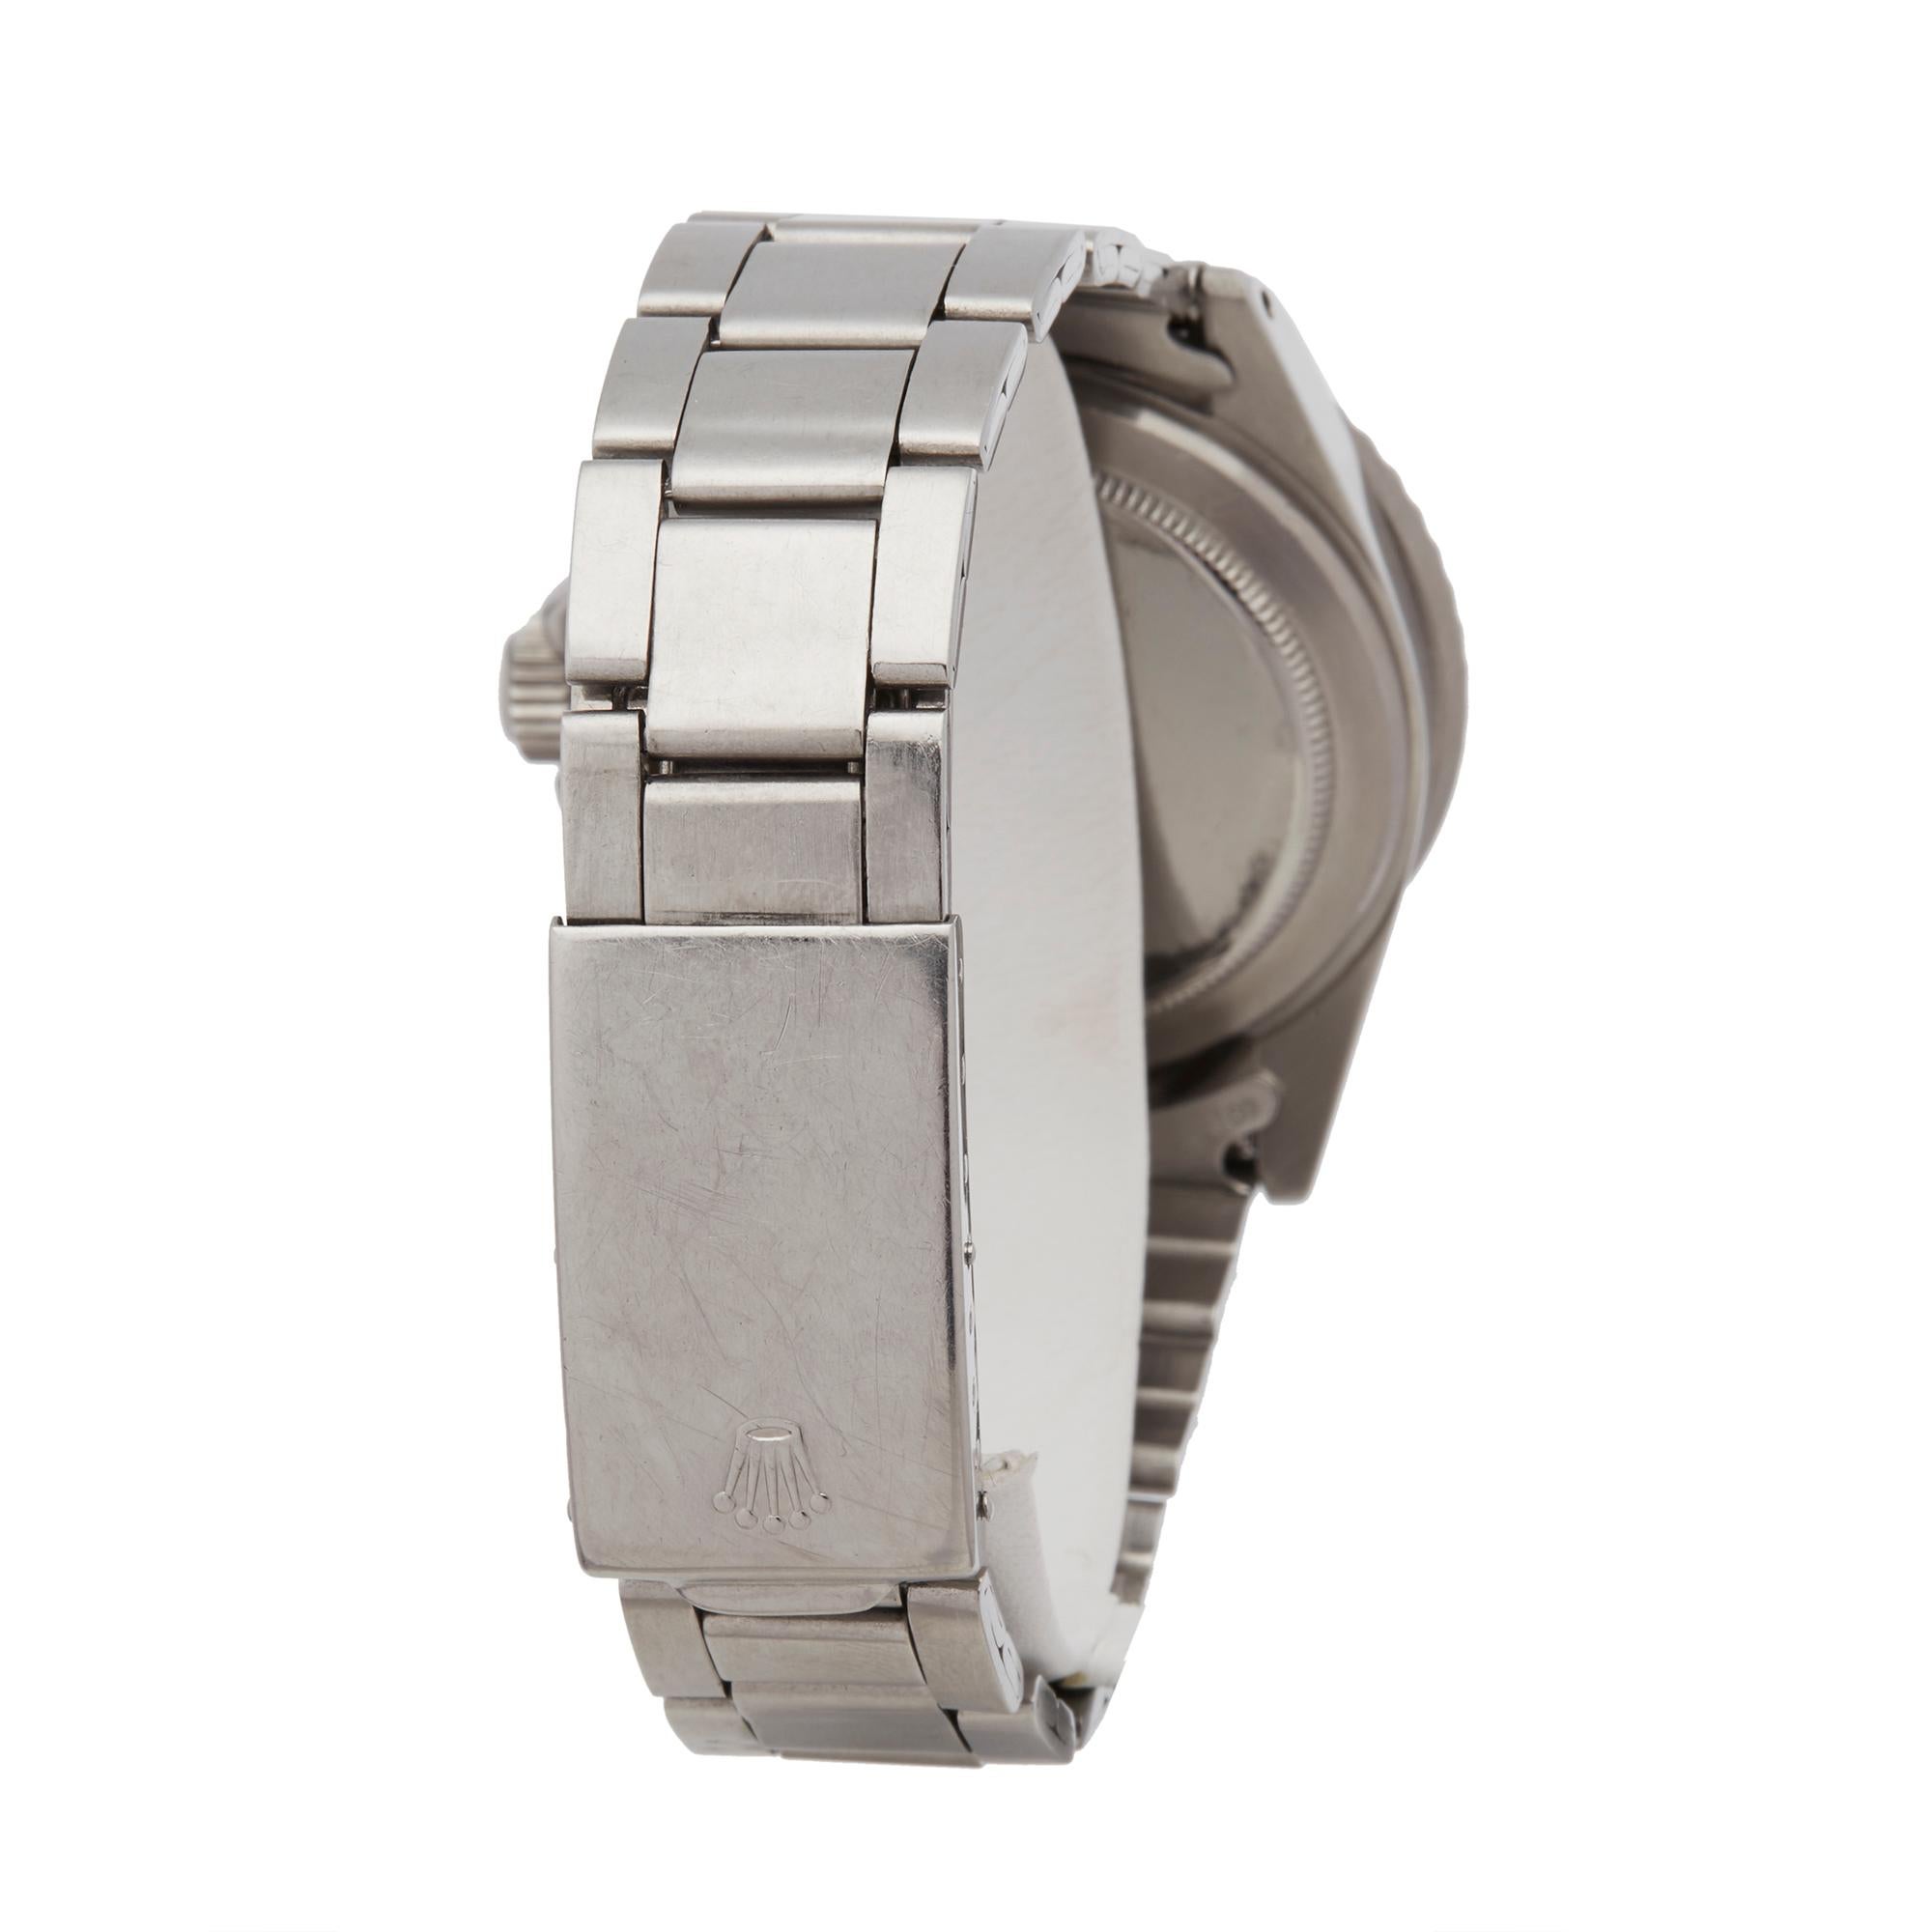 Rolex Submariner Stainless Steel 5513 Wristwatch 1